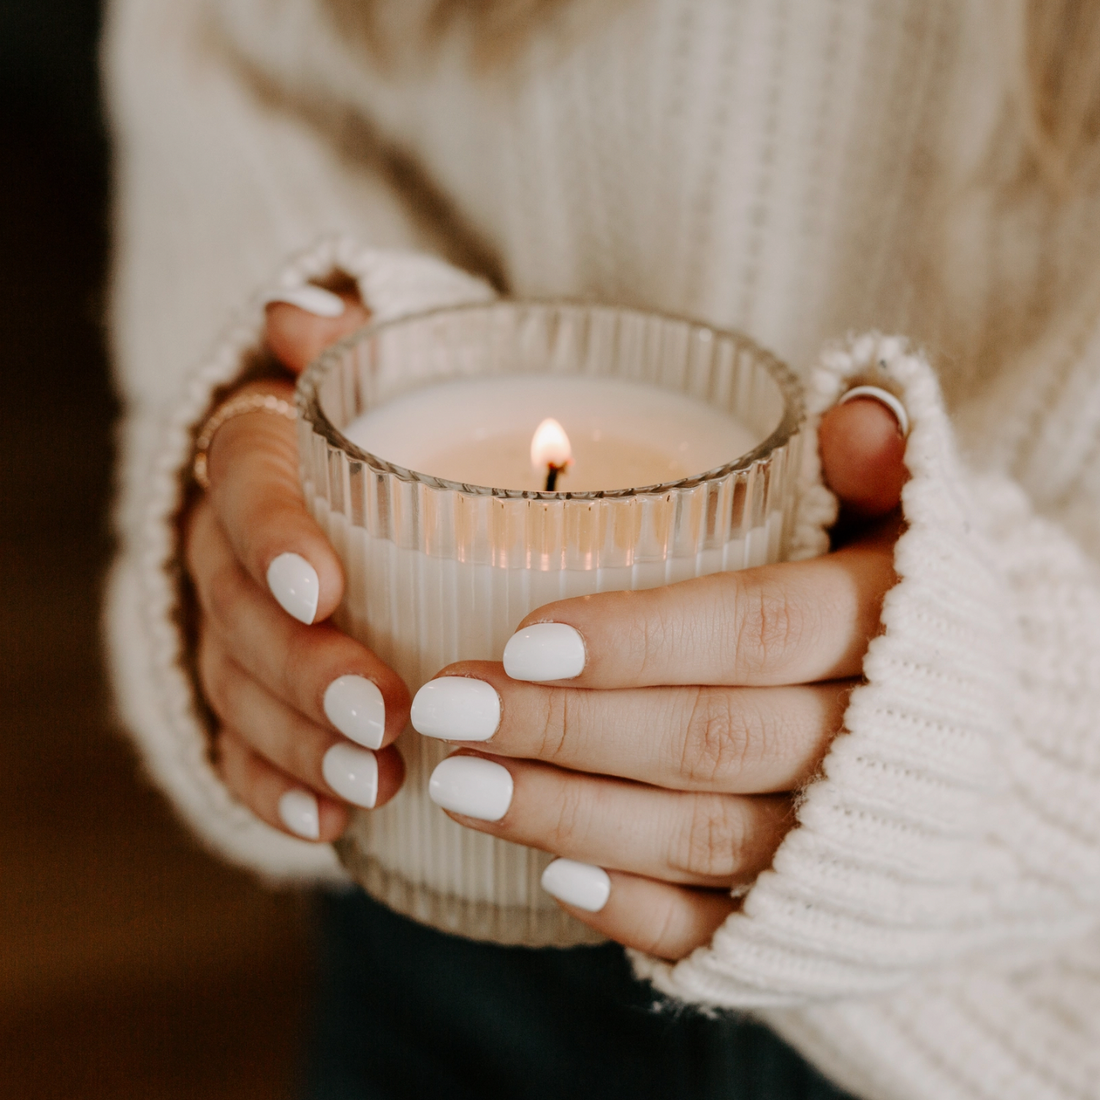 Cozy Season Candle